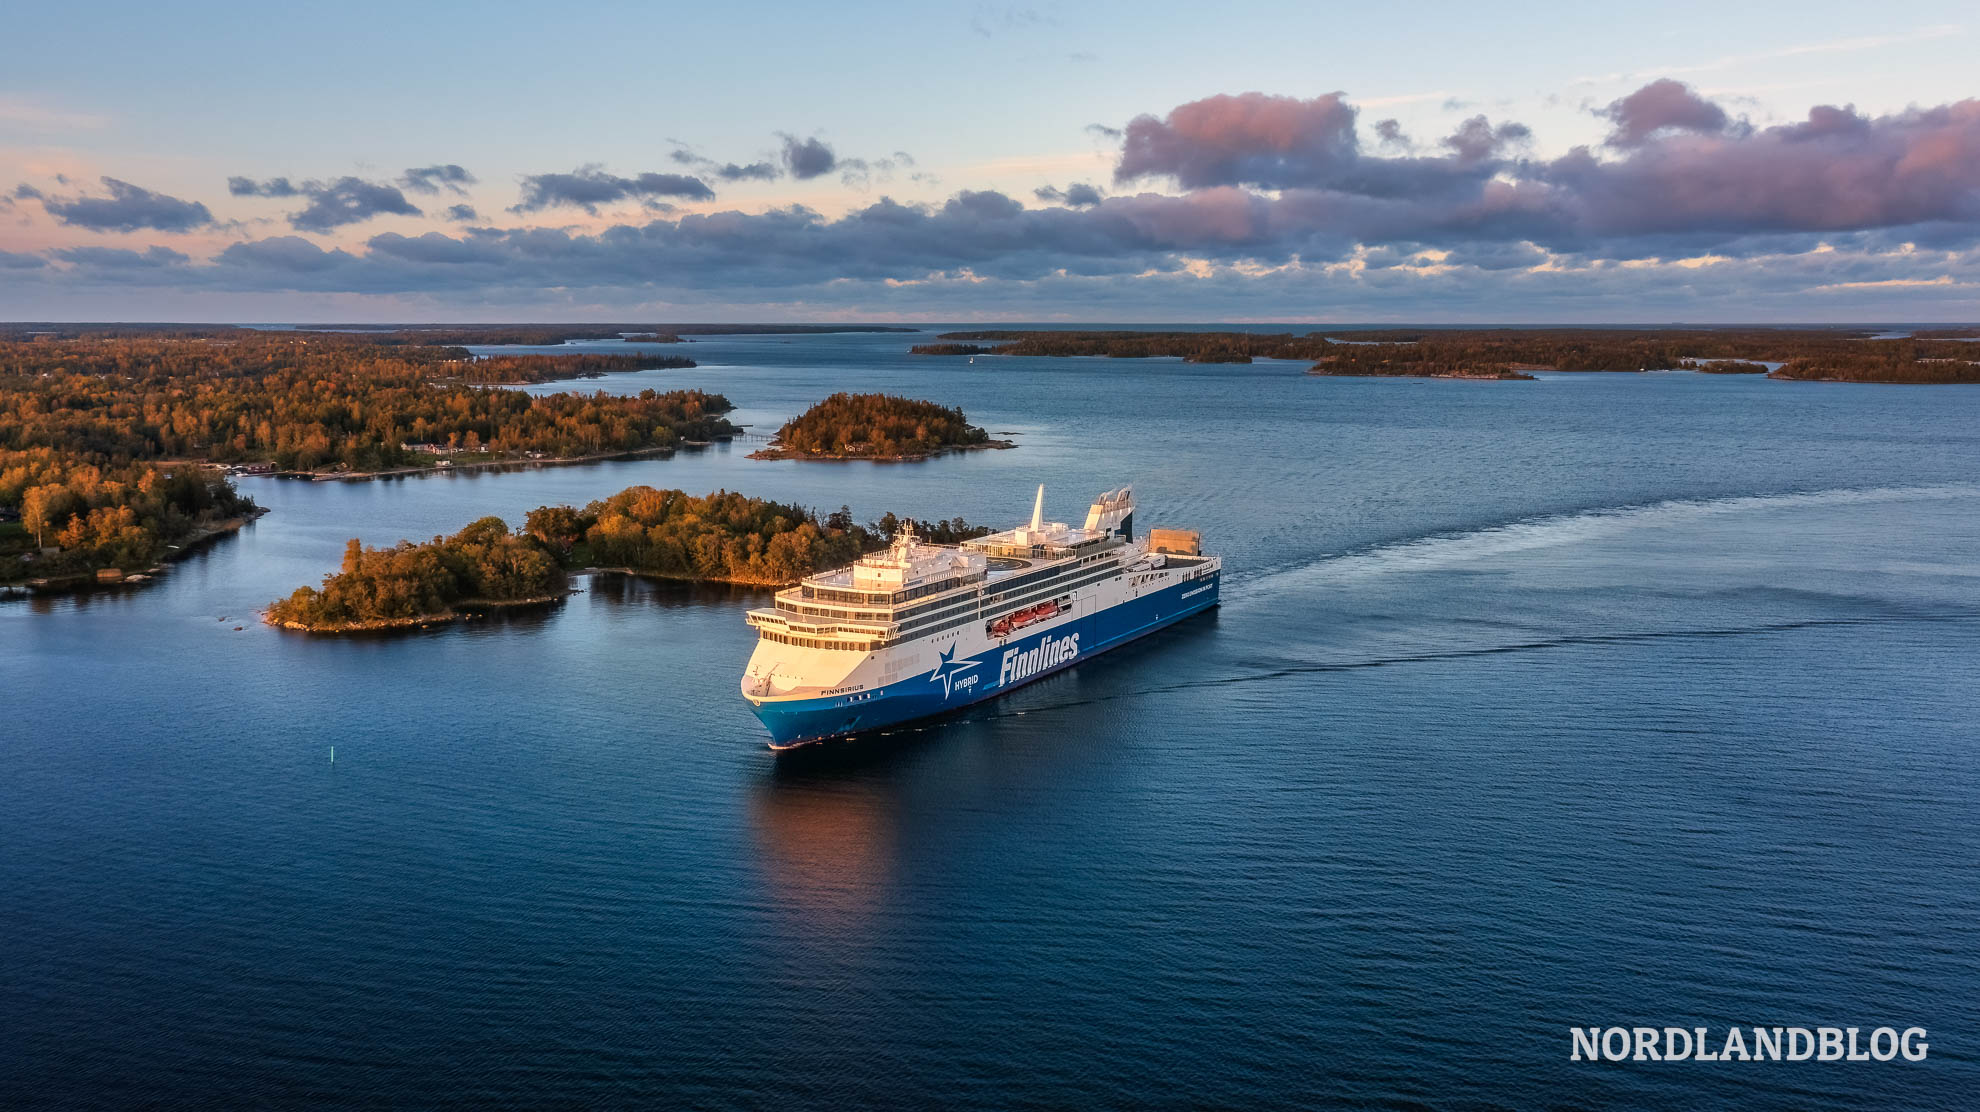 Fähre Finnsirius der Reederei Finnlines auf der Ostsee